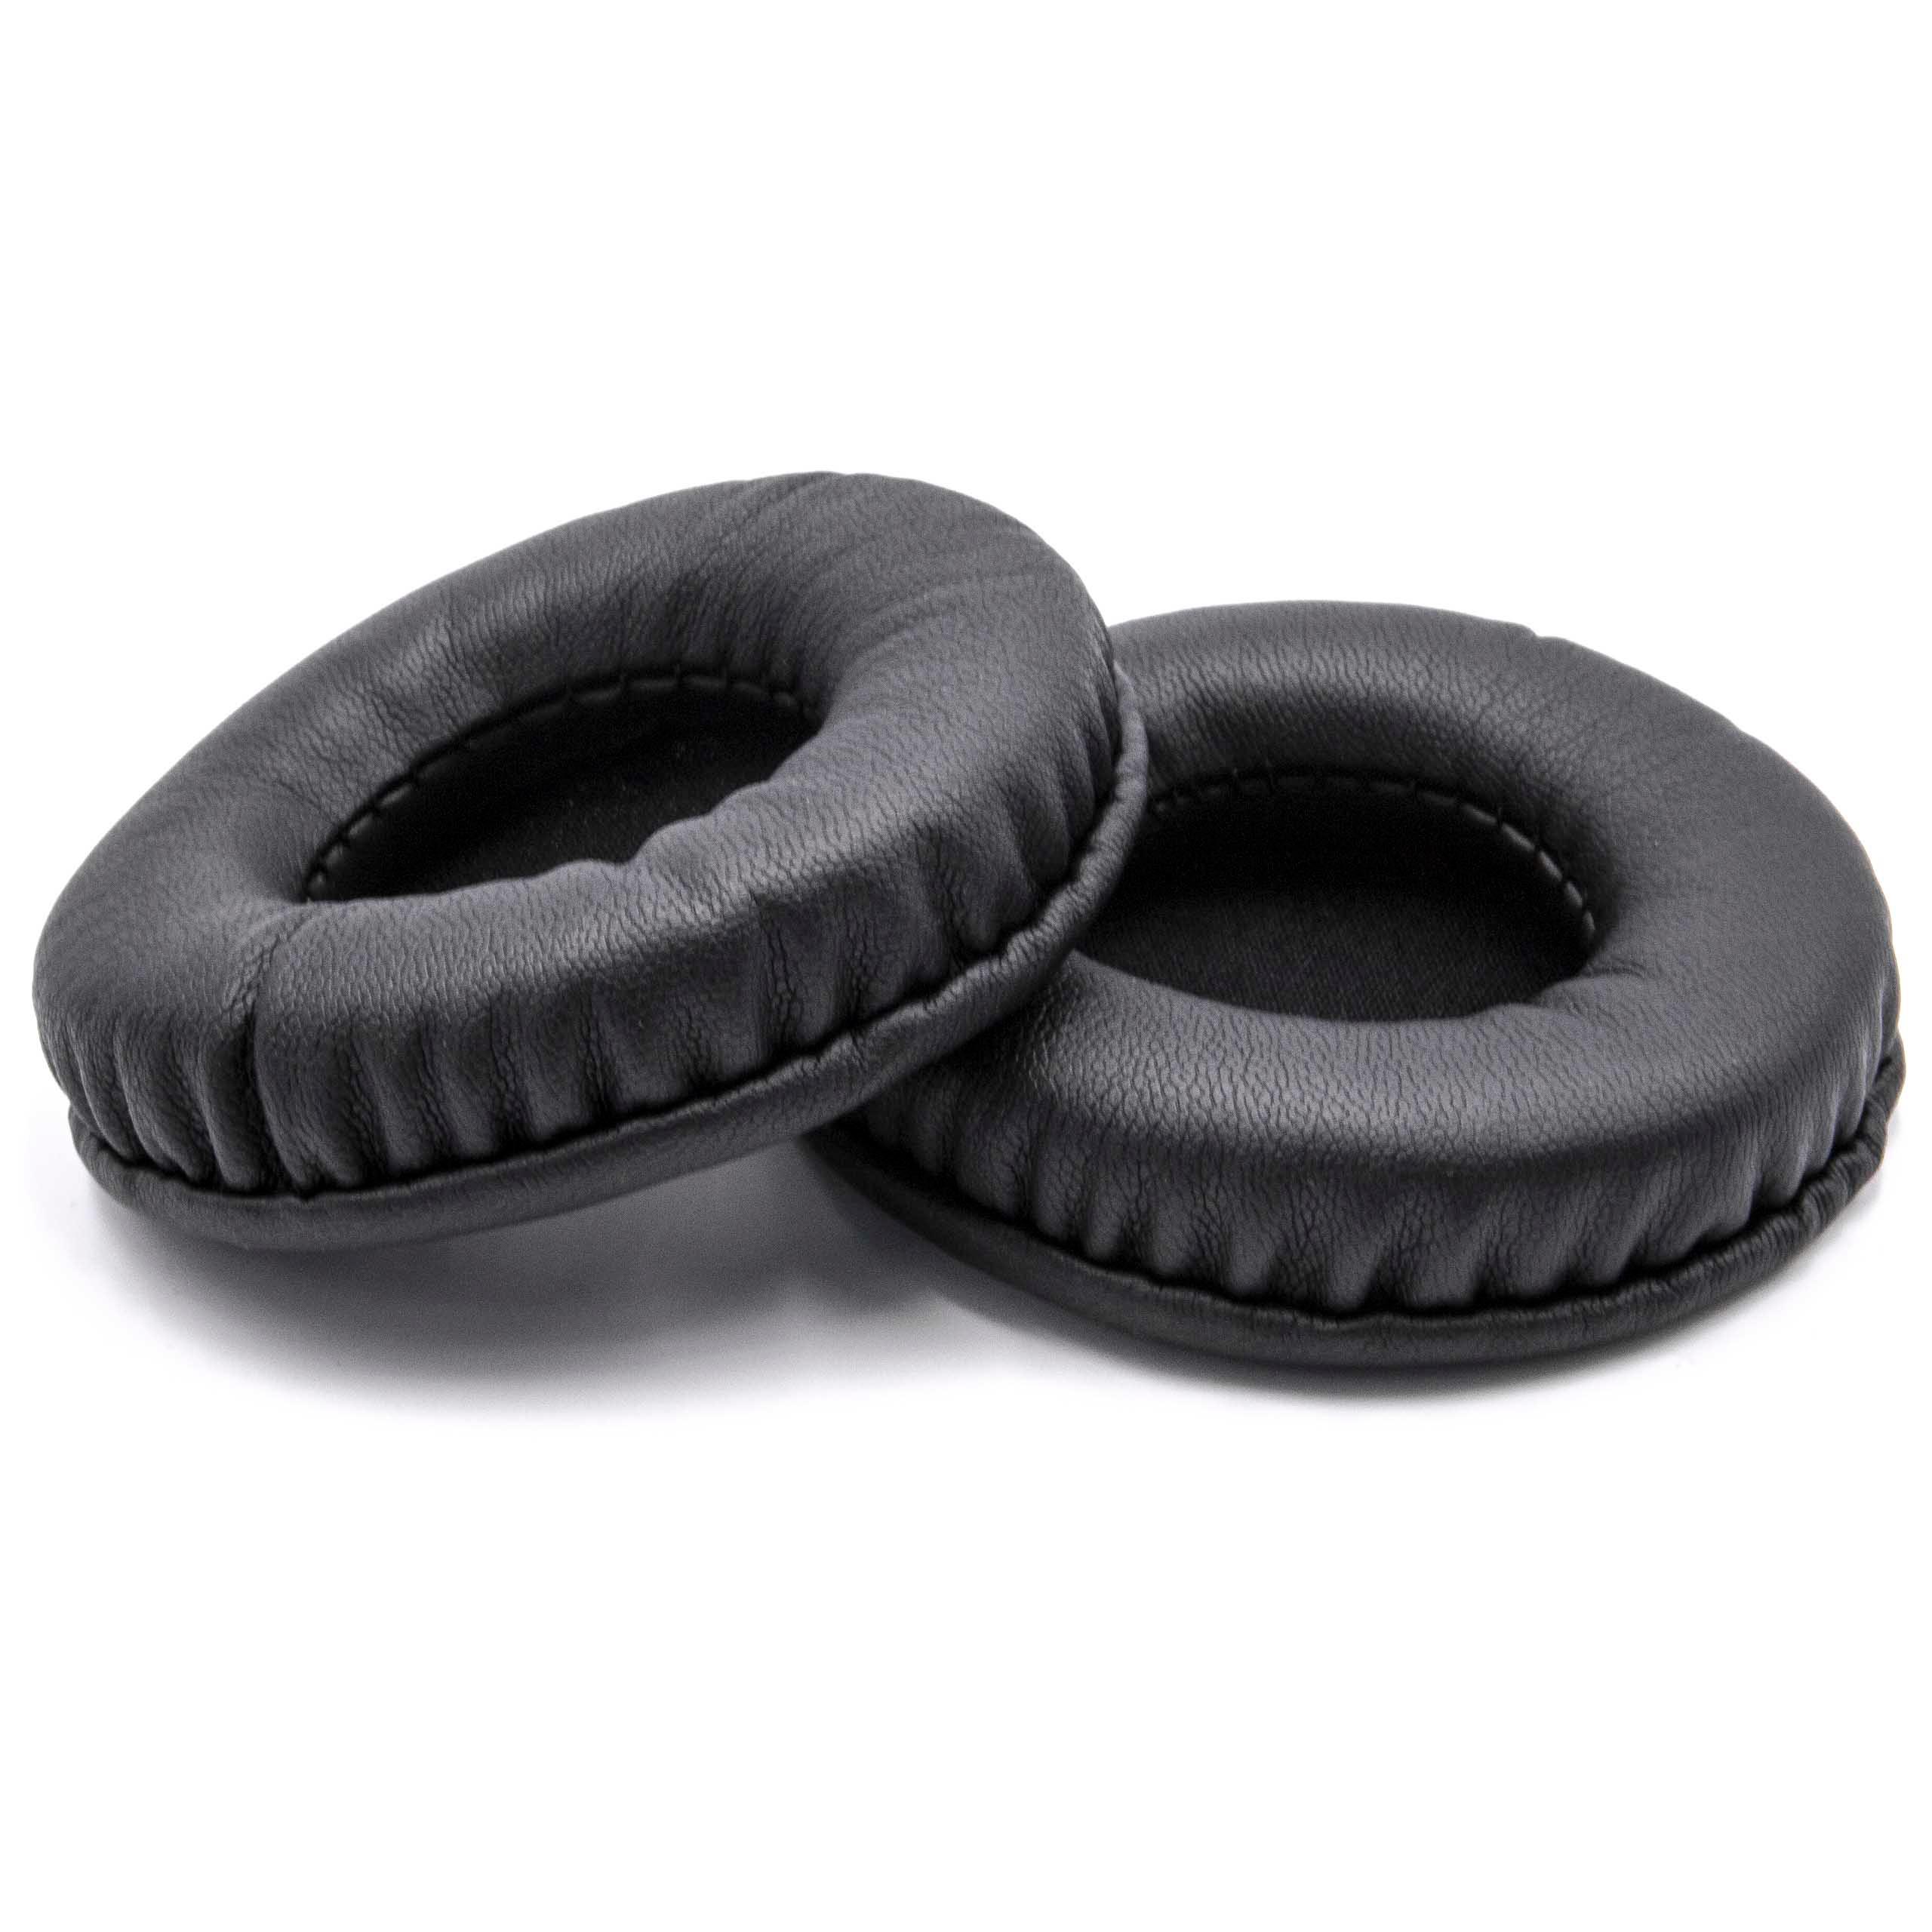 2x 1 paio di cuscinetti - poliuretano, 7,5 cm diametro esterno, nero